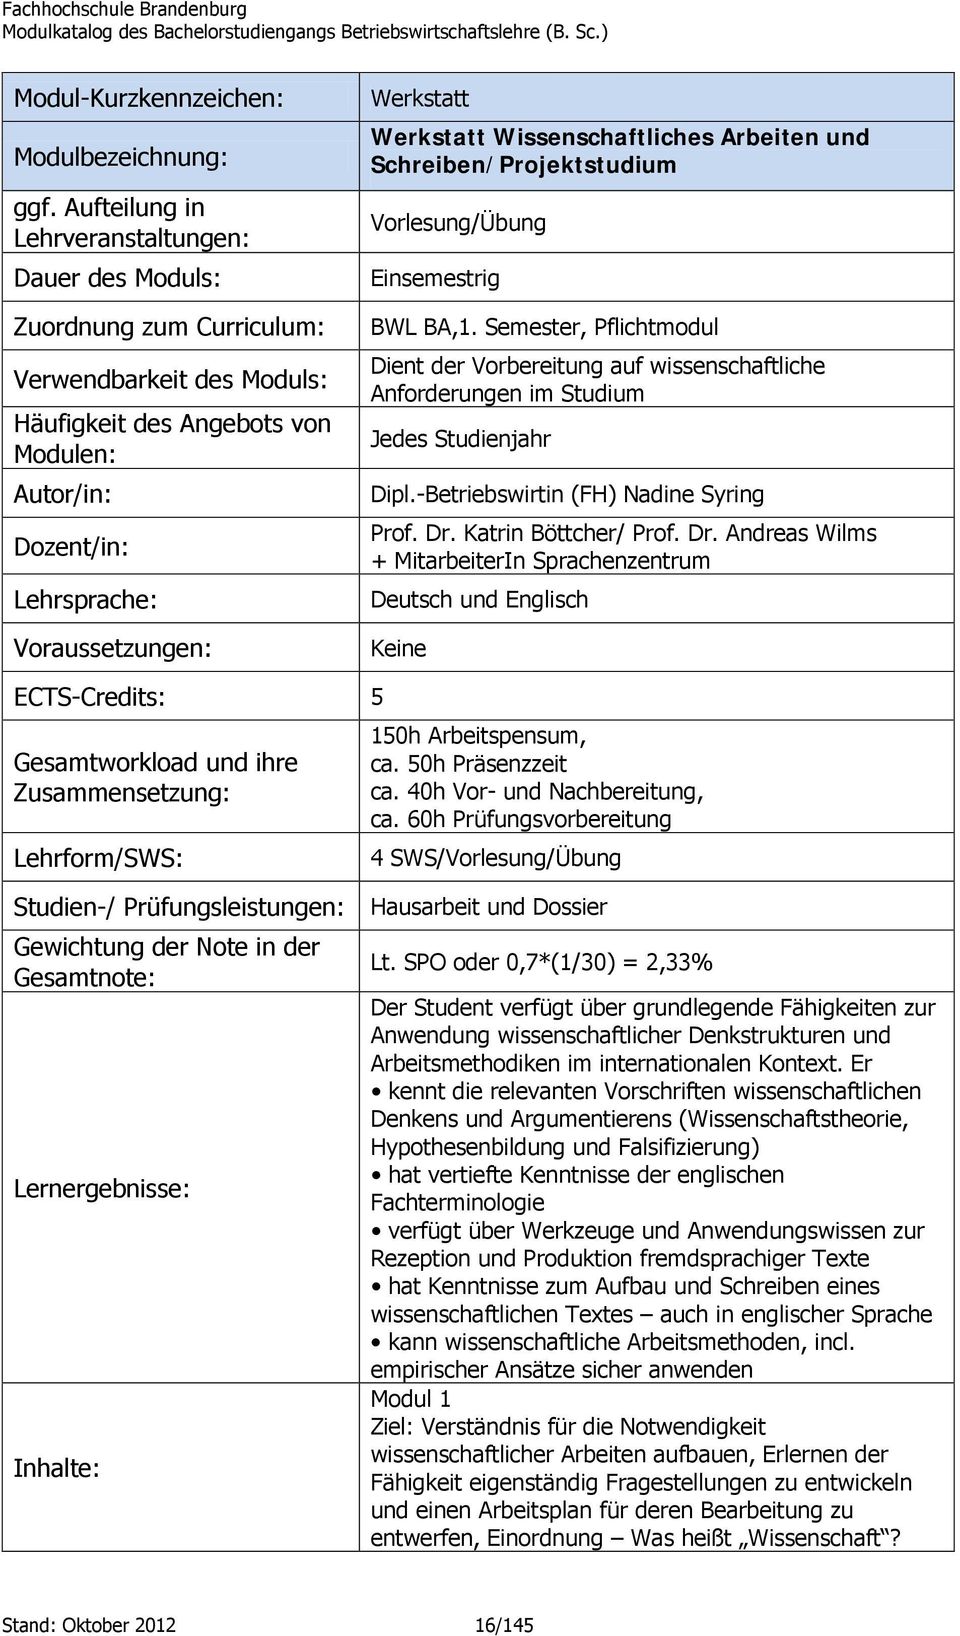 Werkstatt Werkstatt Wissenschaftliches Arbeiten und Schreiben/Projektstudium Vorlesung/Übung Einsemestrig BWL BA,1.